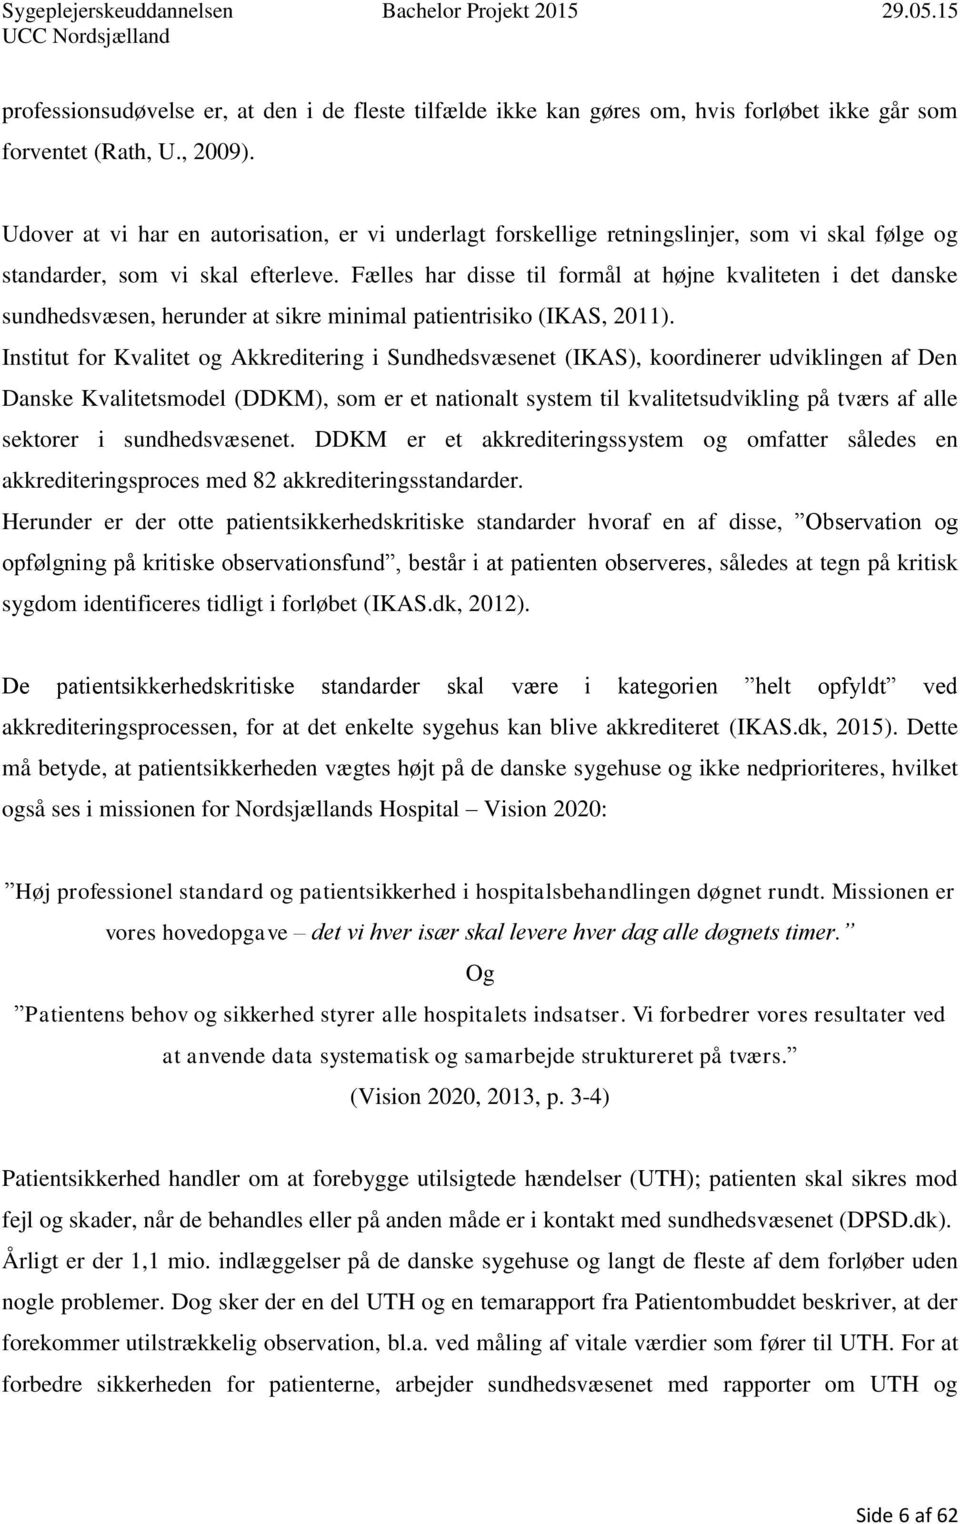 Fælles har disse til formål at højne kvaliteten i det danske sundhedsvæsen, herunder at sikre minimal patientrisiko (IKAS, 2011).